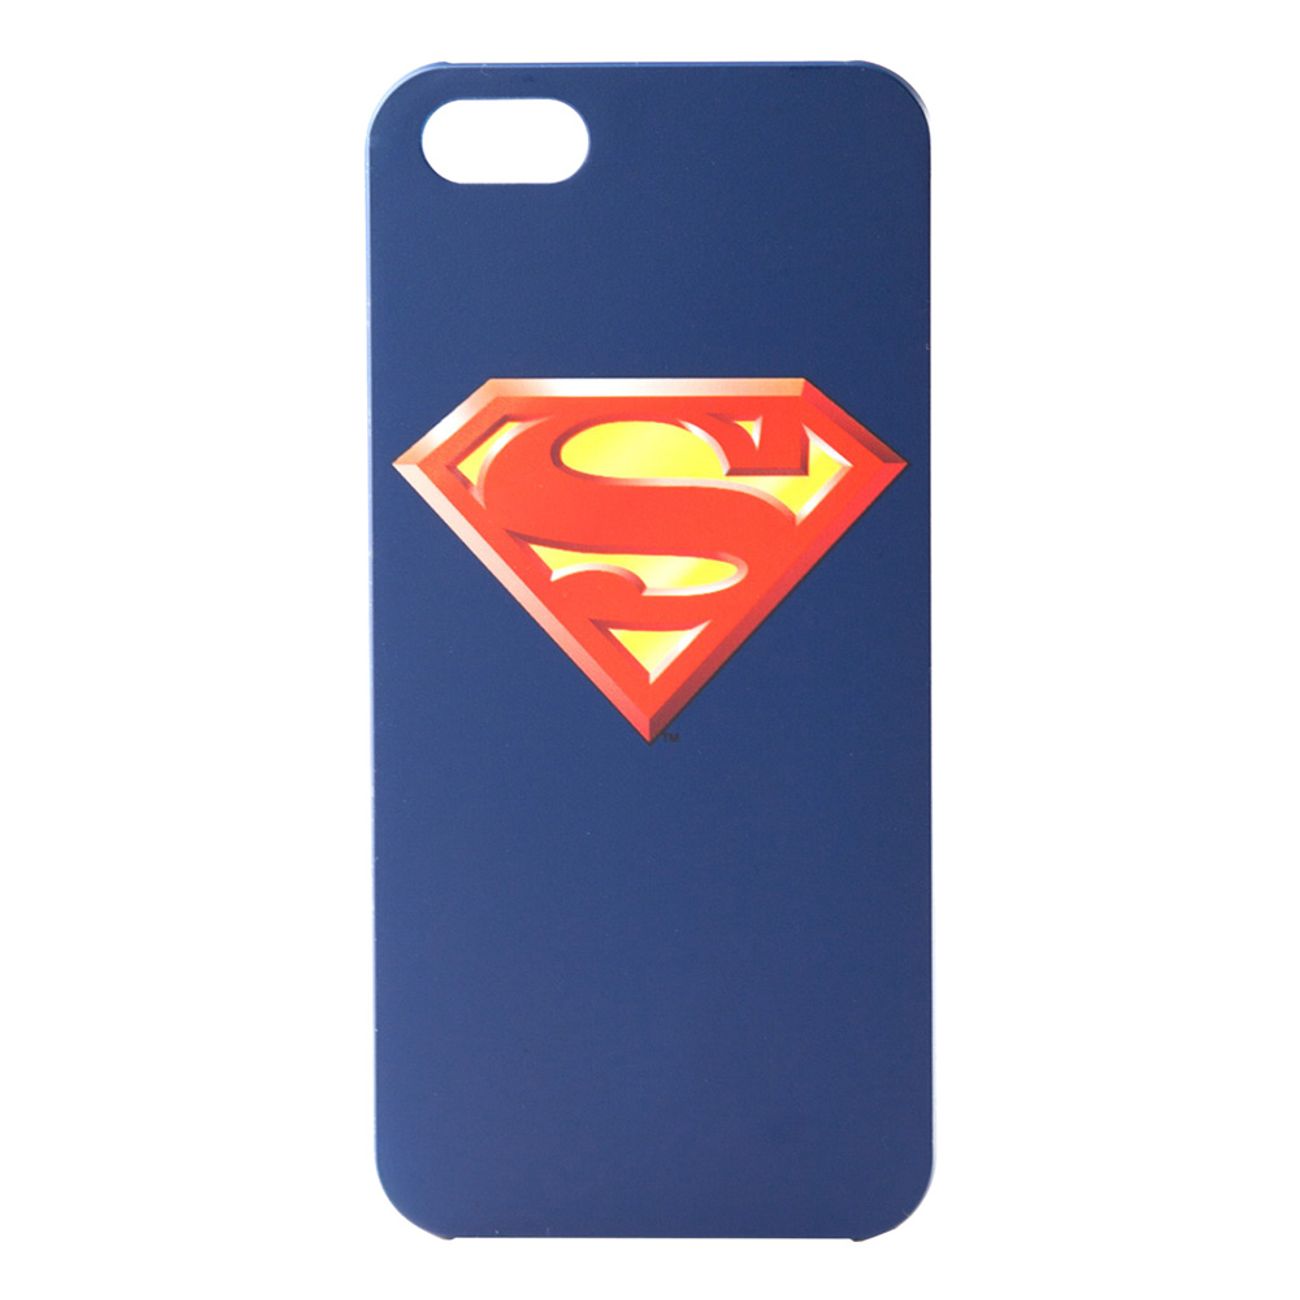 superman-iphone-6-skal-1